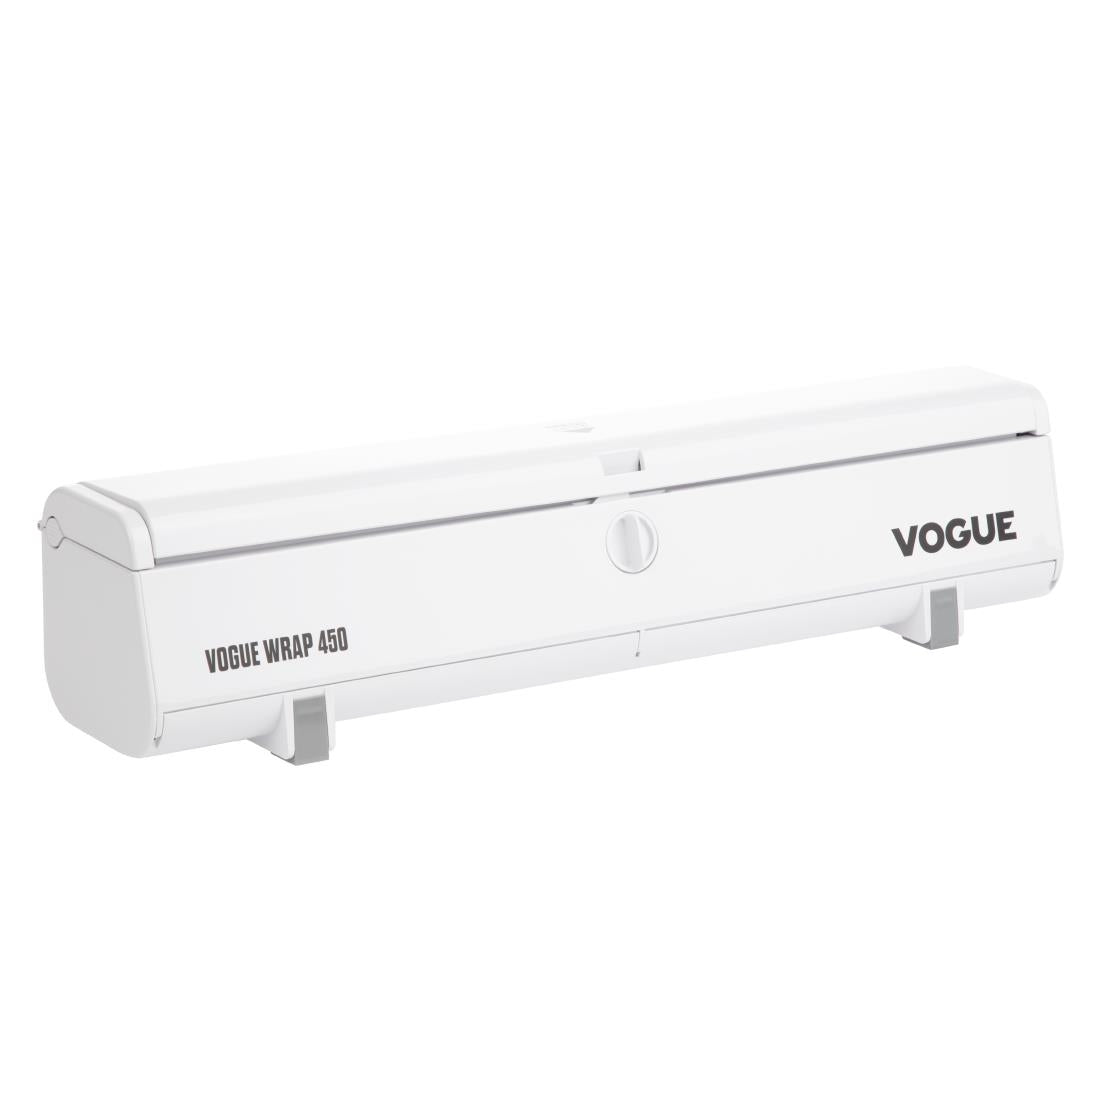 SA776 Vogue Wrap 450 Foil Dispenser Bundle